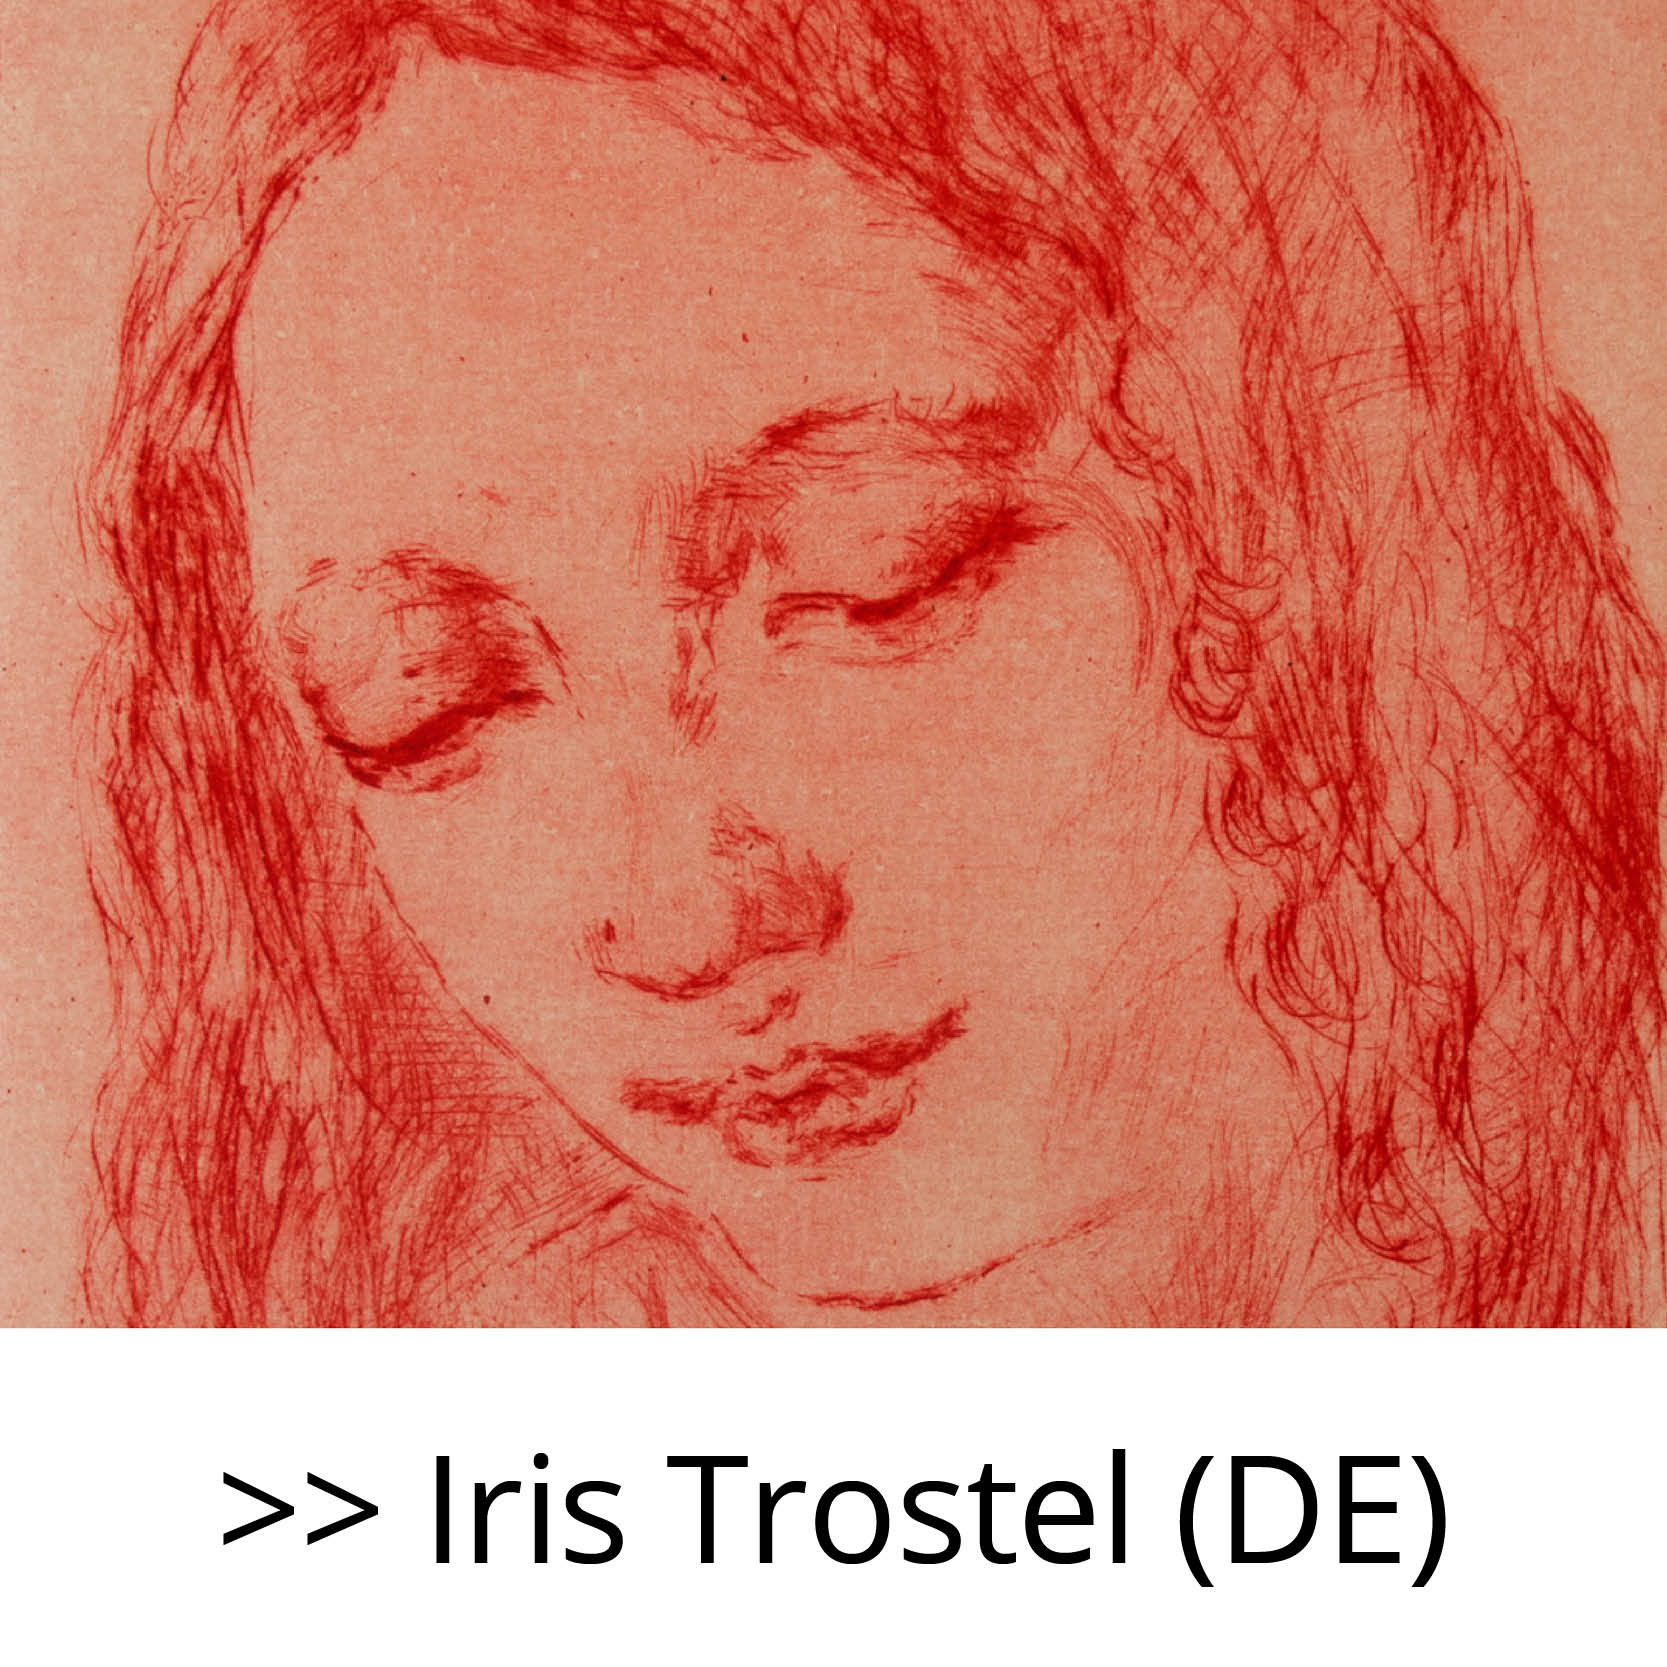 Iris_Trostel_(DE)2